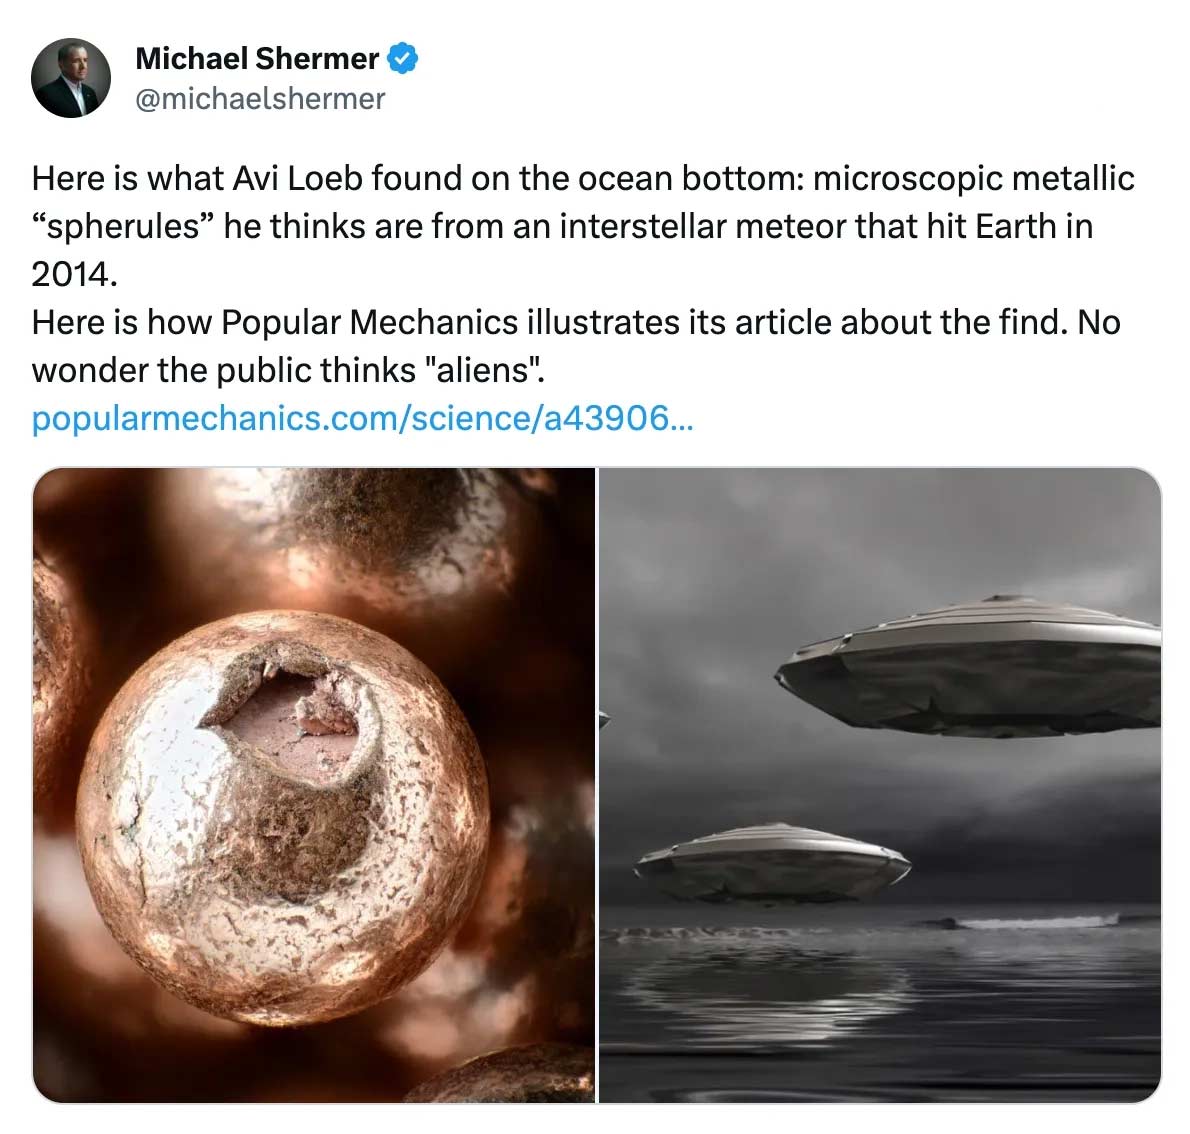 Tweet by Michael Shermer